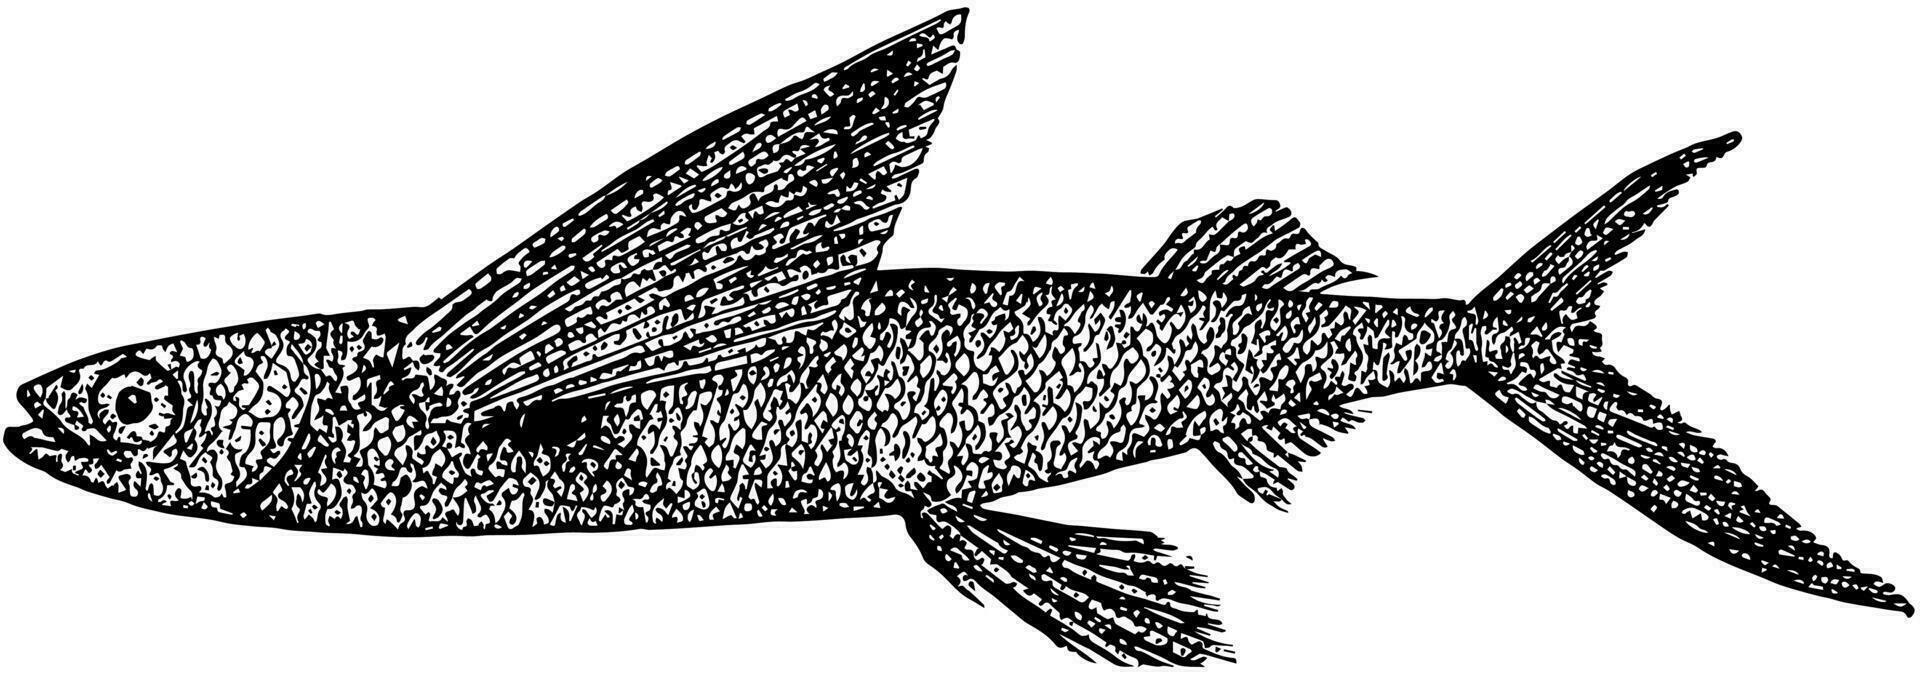 California Flying Fish, vintage illustration. vector